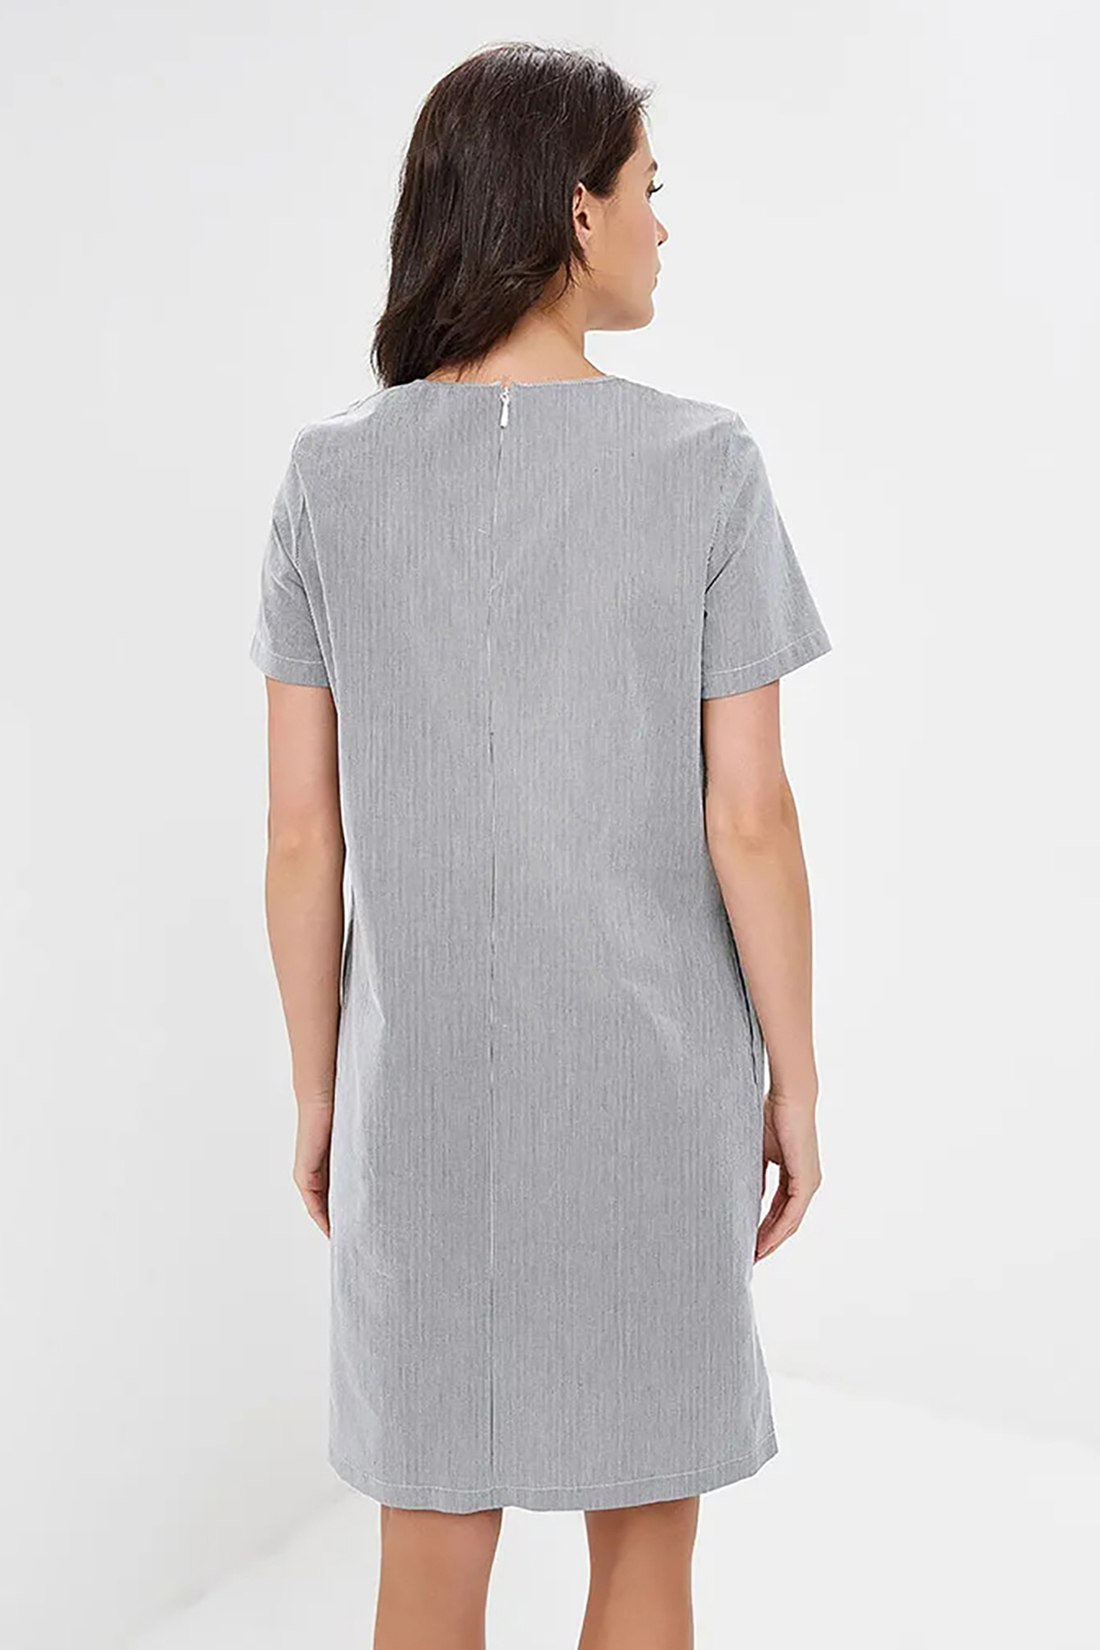 Прямое платье в тонкую полоску (арт. baon B459046), размер M, цвет серый Прямое платье в тонкую полоску (арт. baon B459046) - фото 2